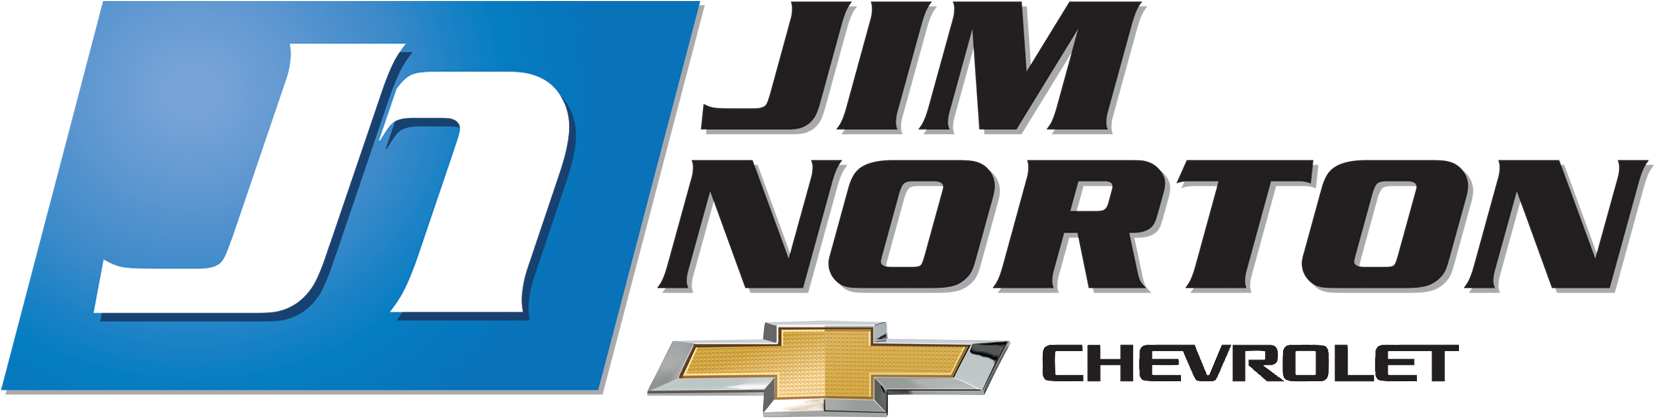 Jim Norton Chevrolet - Emblem Clipart (1811x490), Png Download